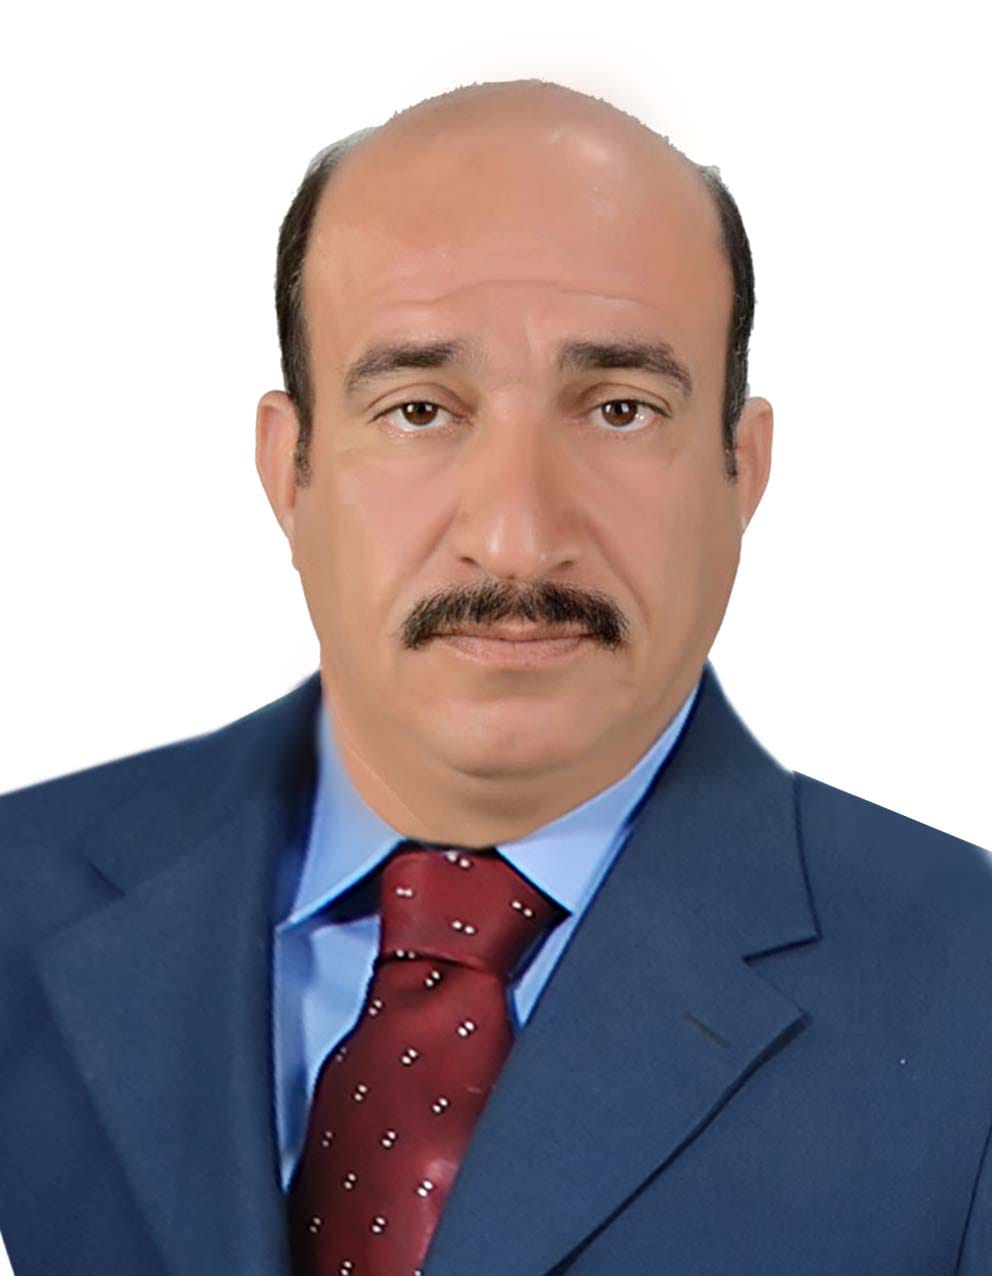 Ahmed Shaker Farman